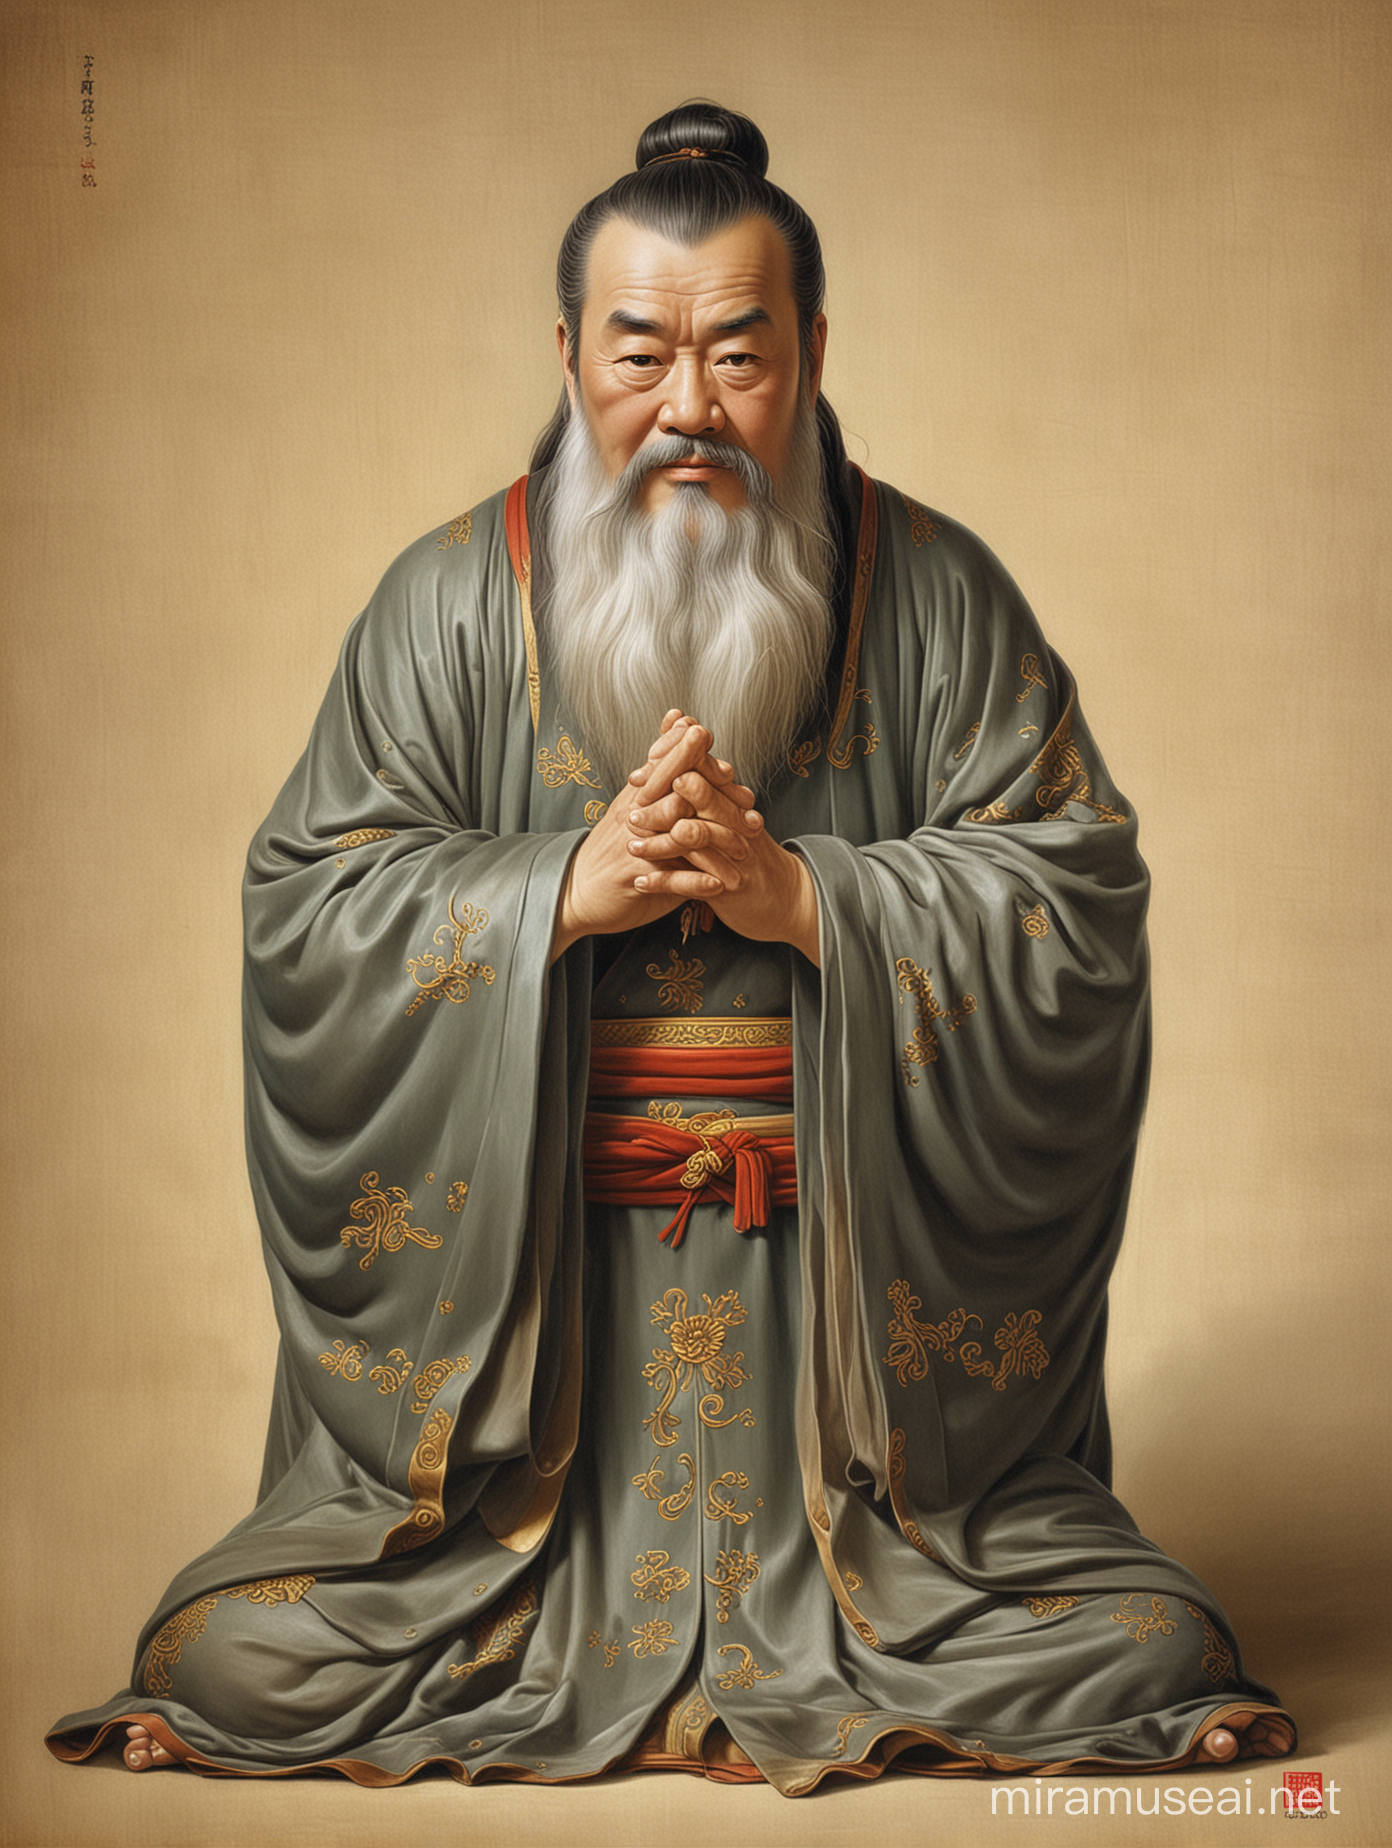 Philosopher Confucius in Contemplation